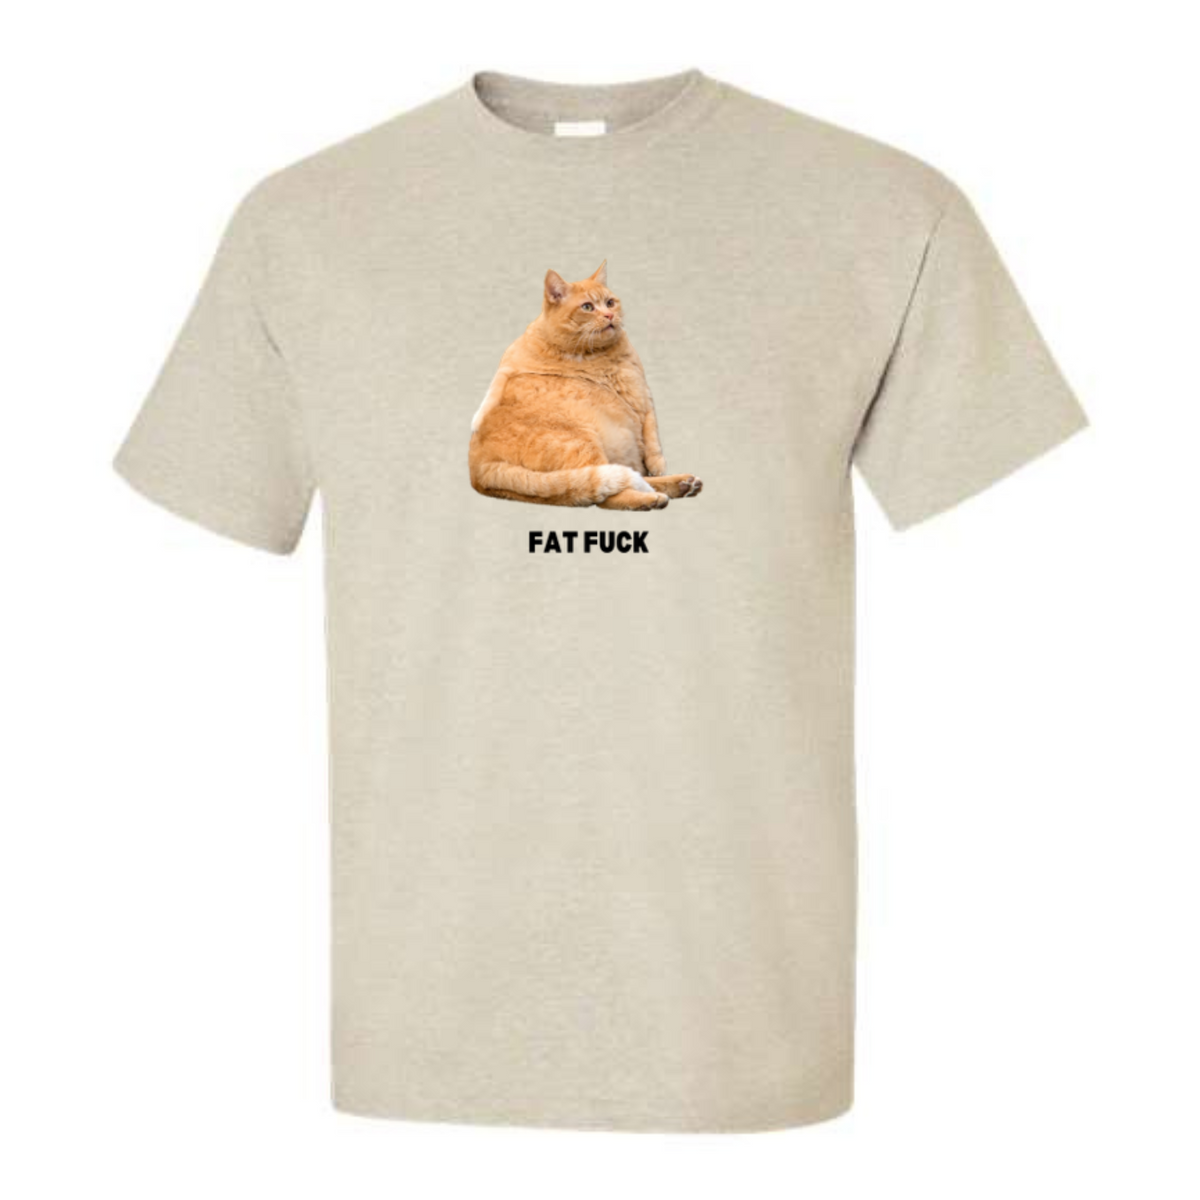 Fat F!ck Cat T-Shirt or Crewneck  Sweatshirt